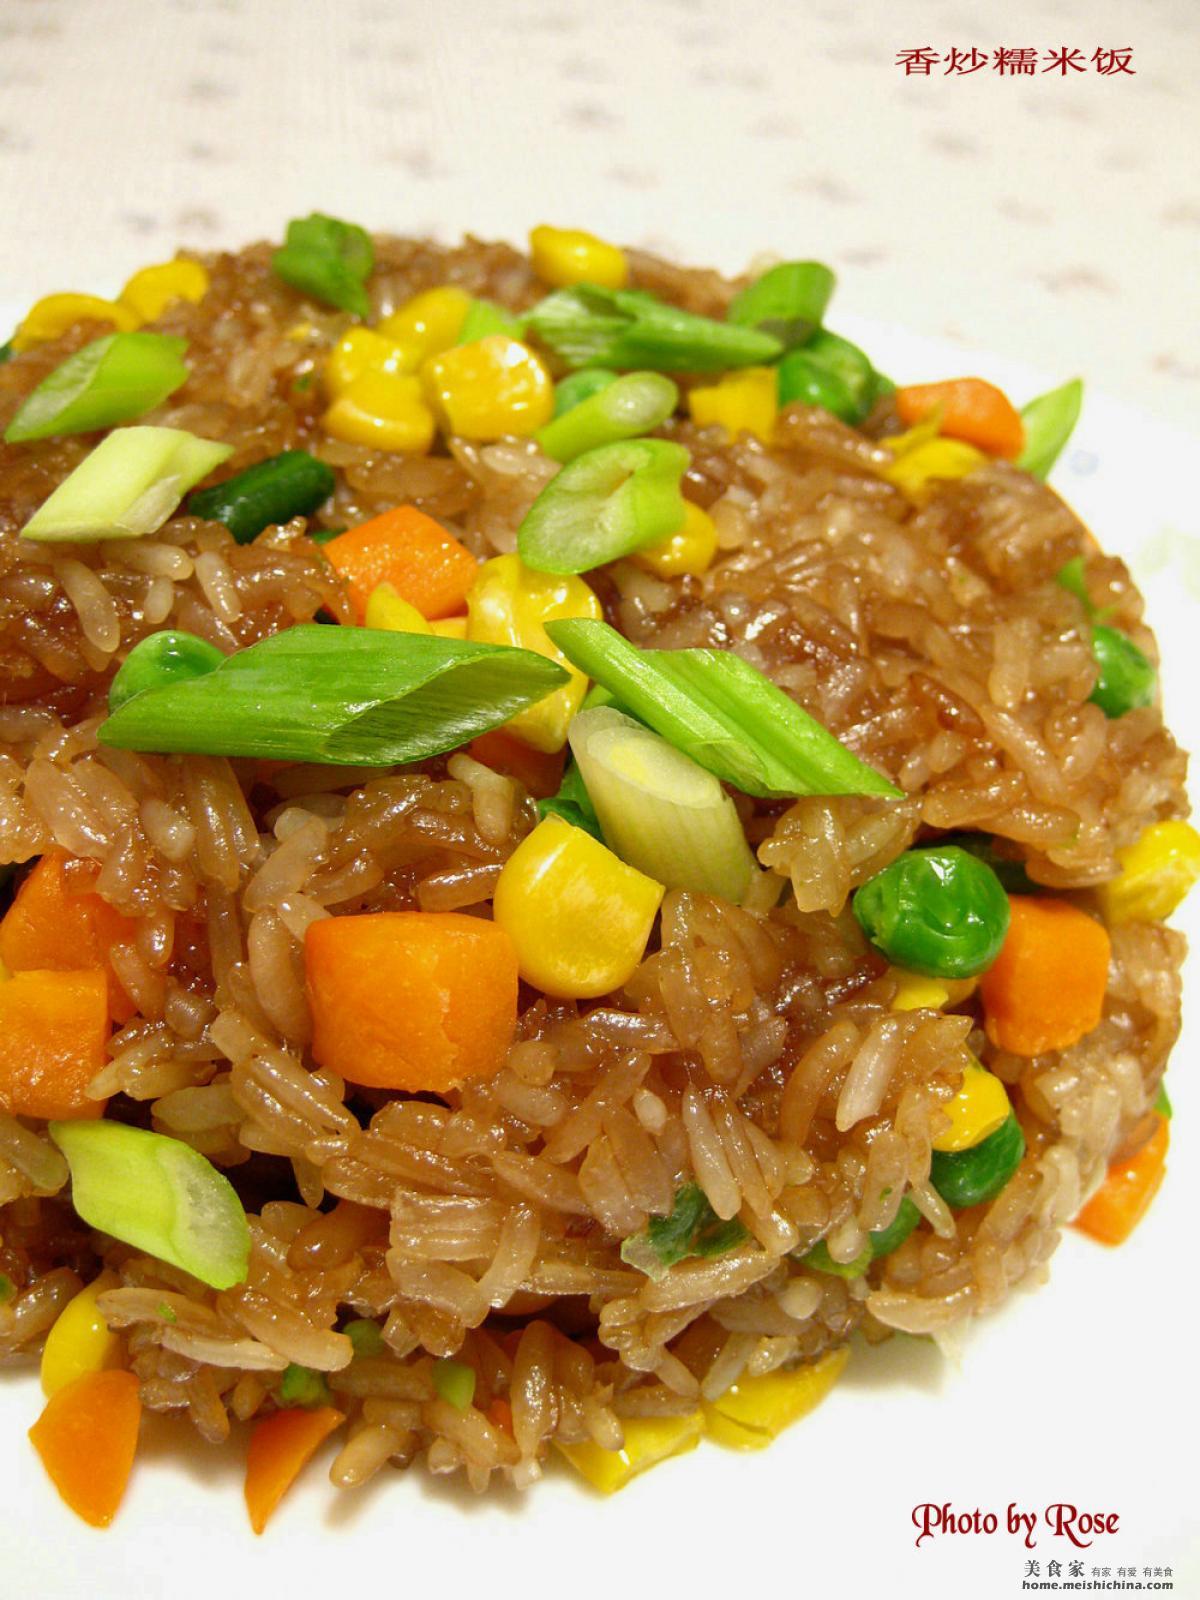 生炒糯米飯食譜、做法 | CookingmamaHelen的Cook1Cook食譜分享